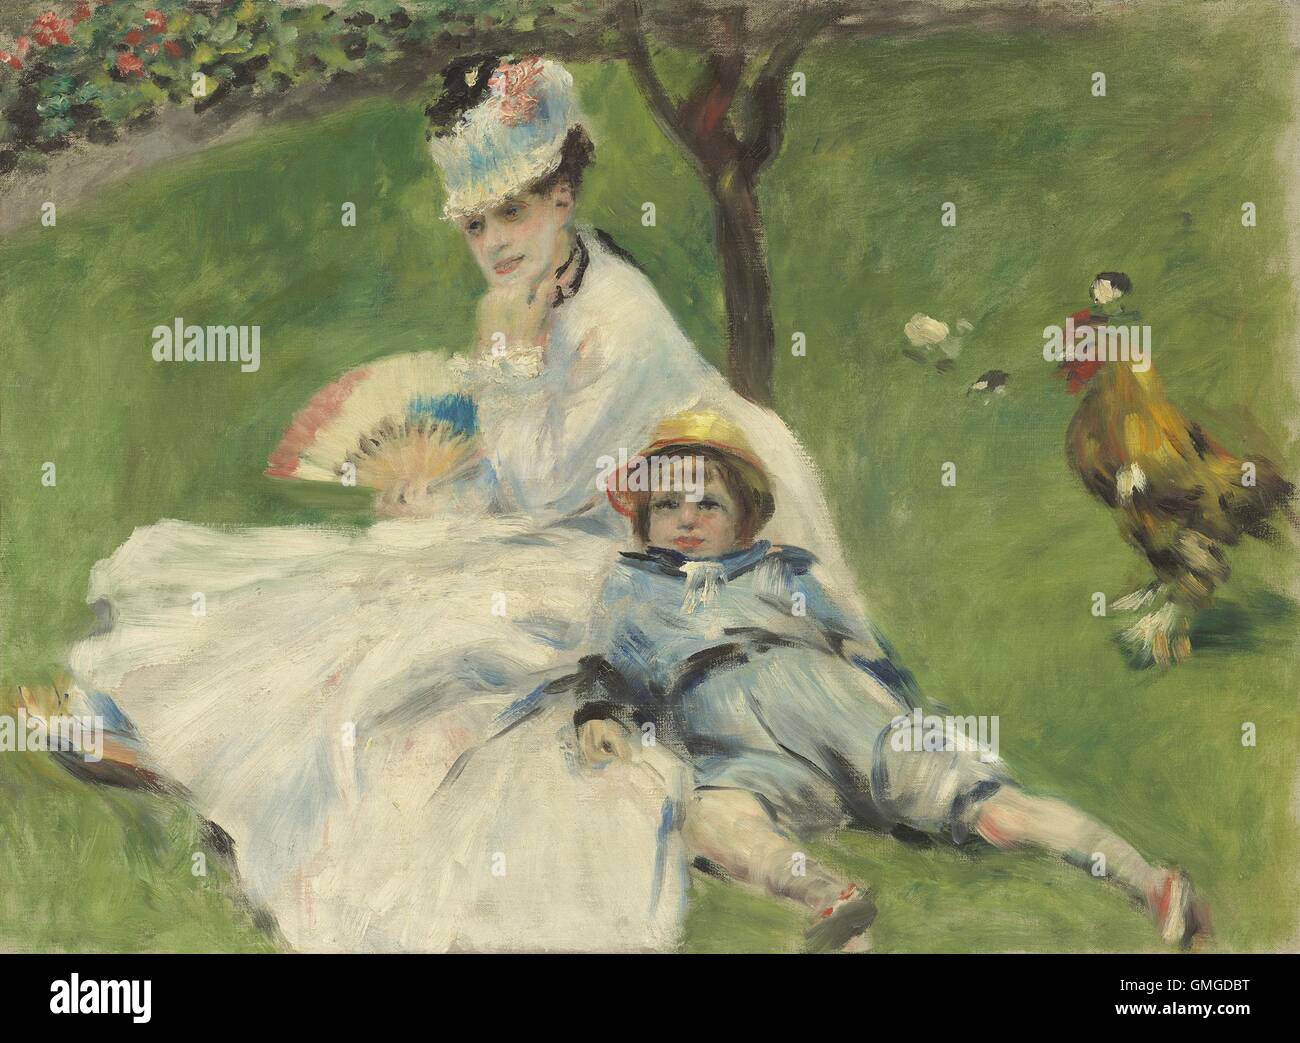 Madame Monet et son fils, par Auguste Renoir, 1874, la peinture impressionniste français, huile sur toile. Renoir était proche de Monet et parfois ils ont travaillé ensemble. Cette peinture a été dans la collection de Monet, puis passe à son fils Michel (BSLOC 2016 5 130) Banque D'Images